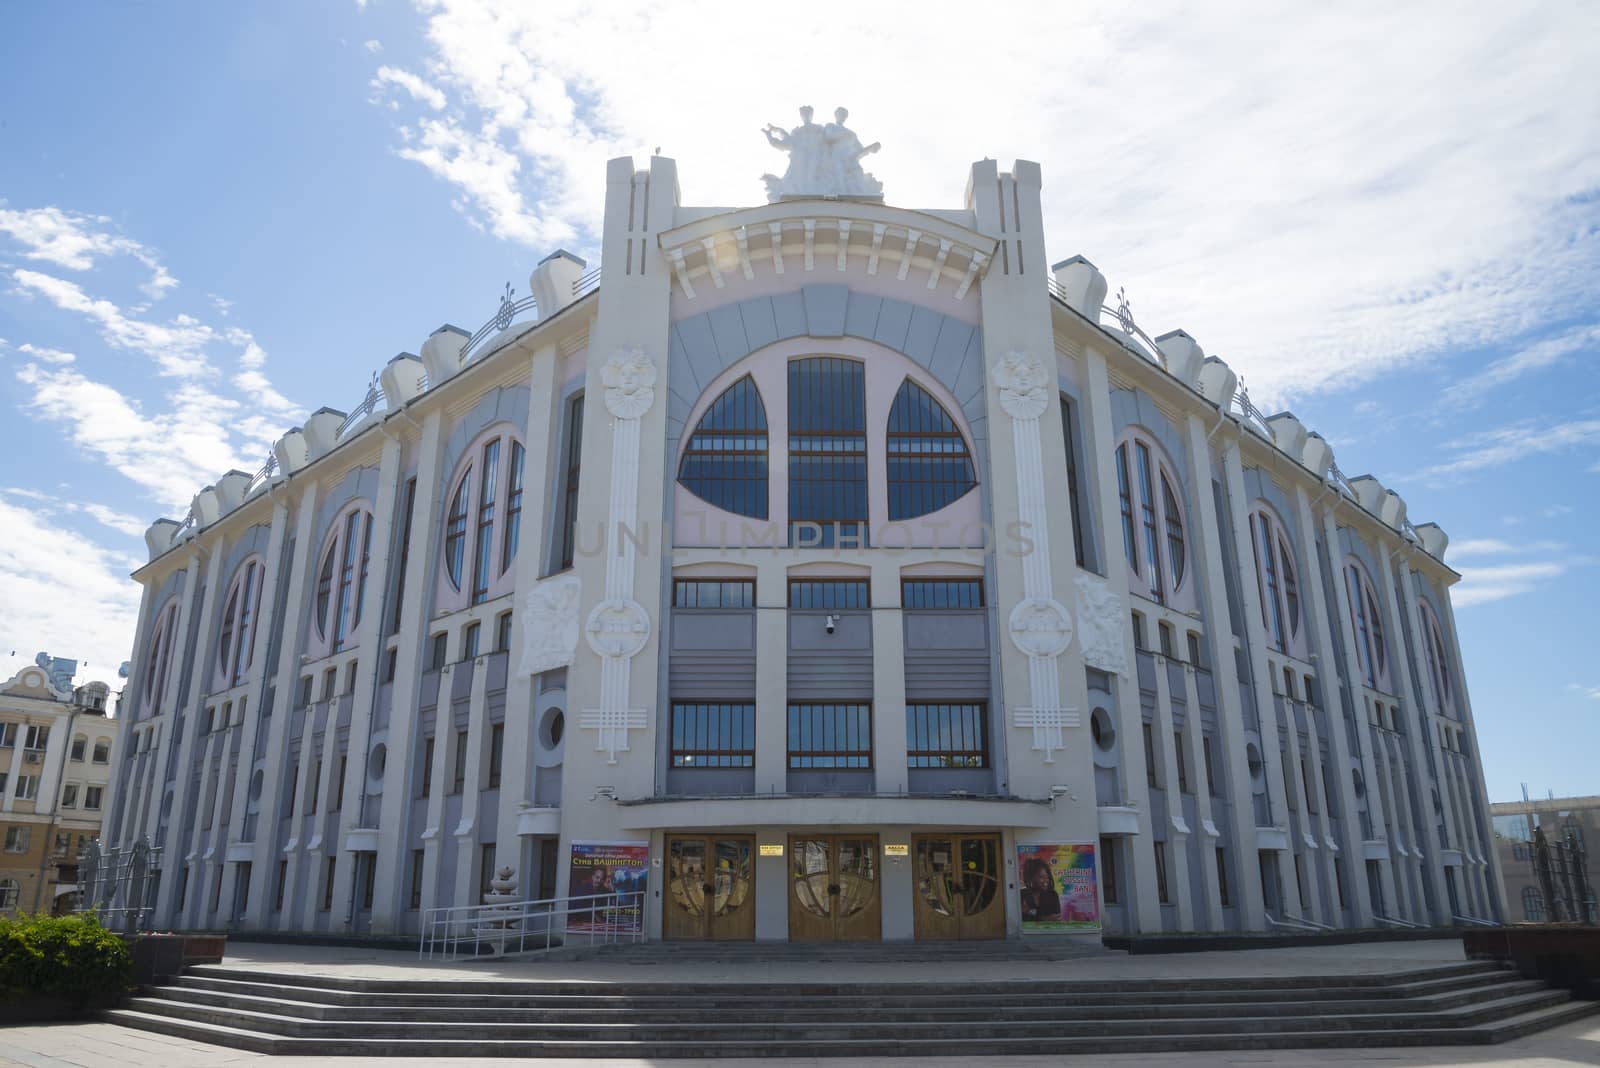 Samara state Philharmonic society with round Windows in Samara, Russia. by butenkow